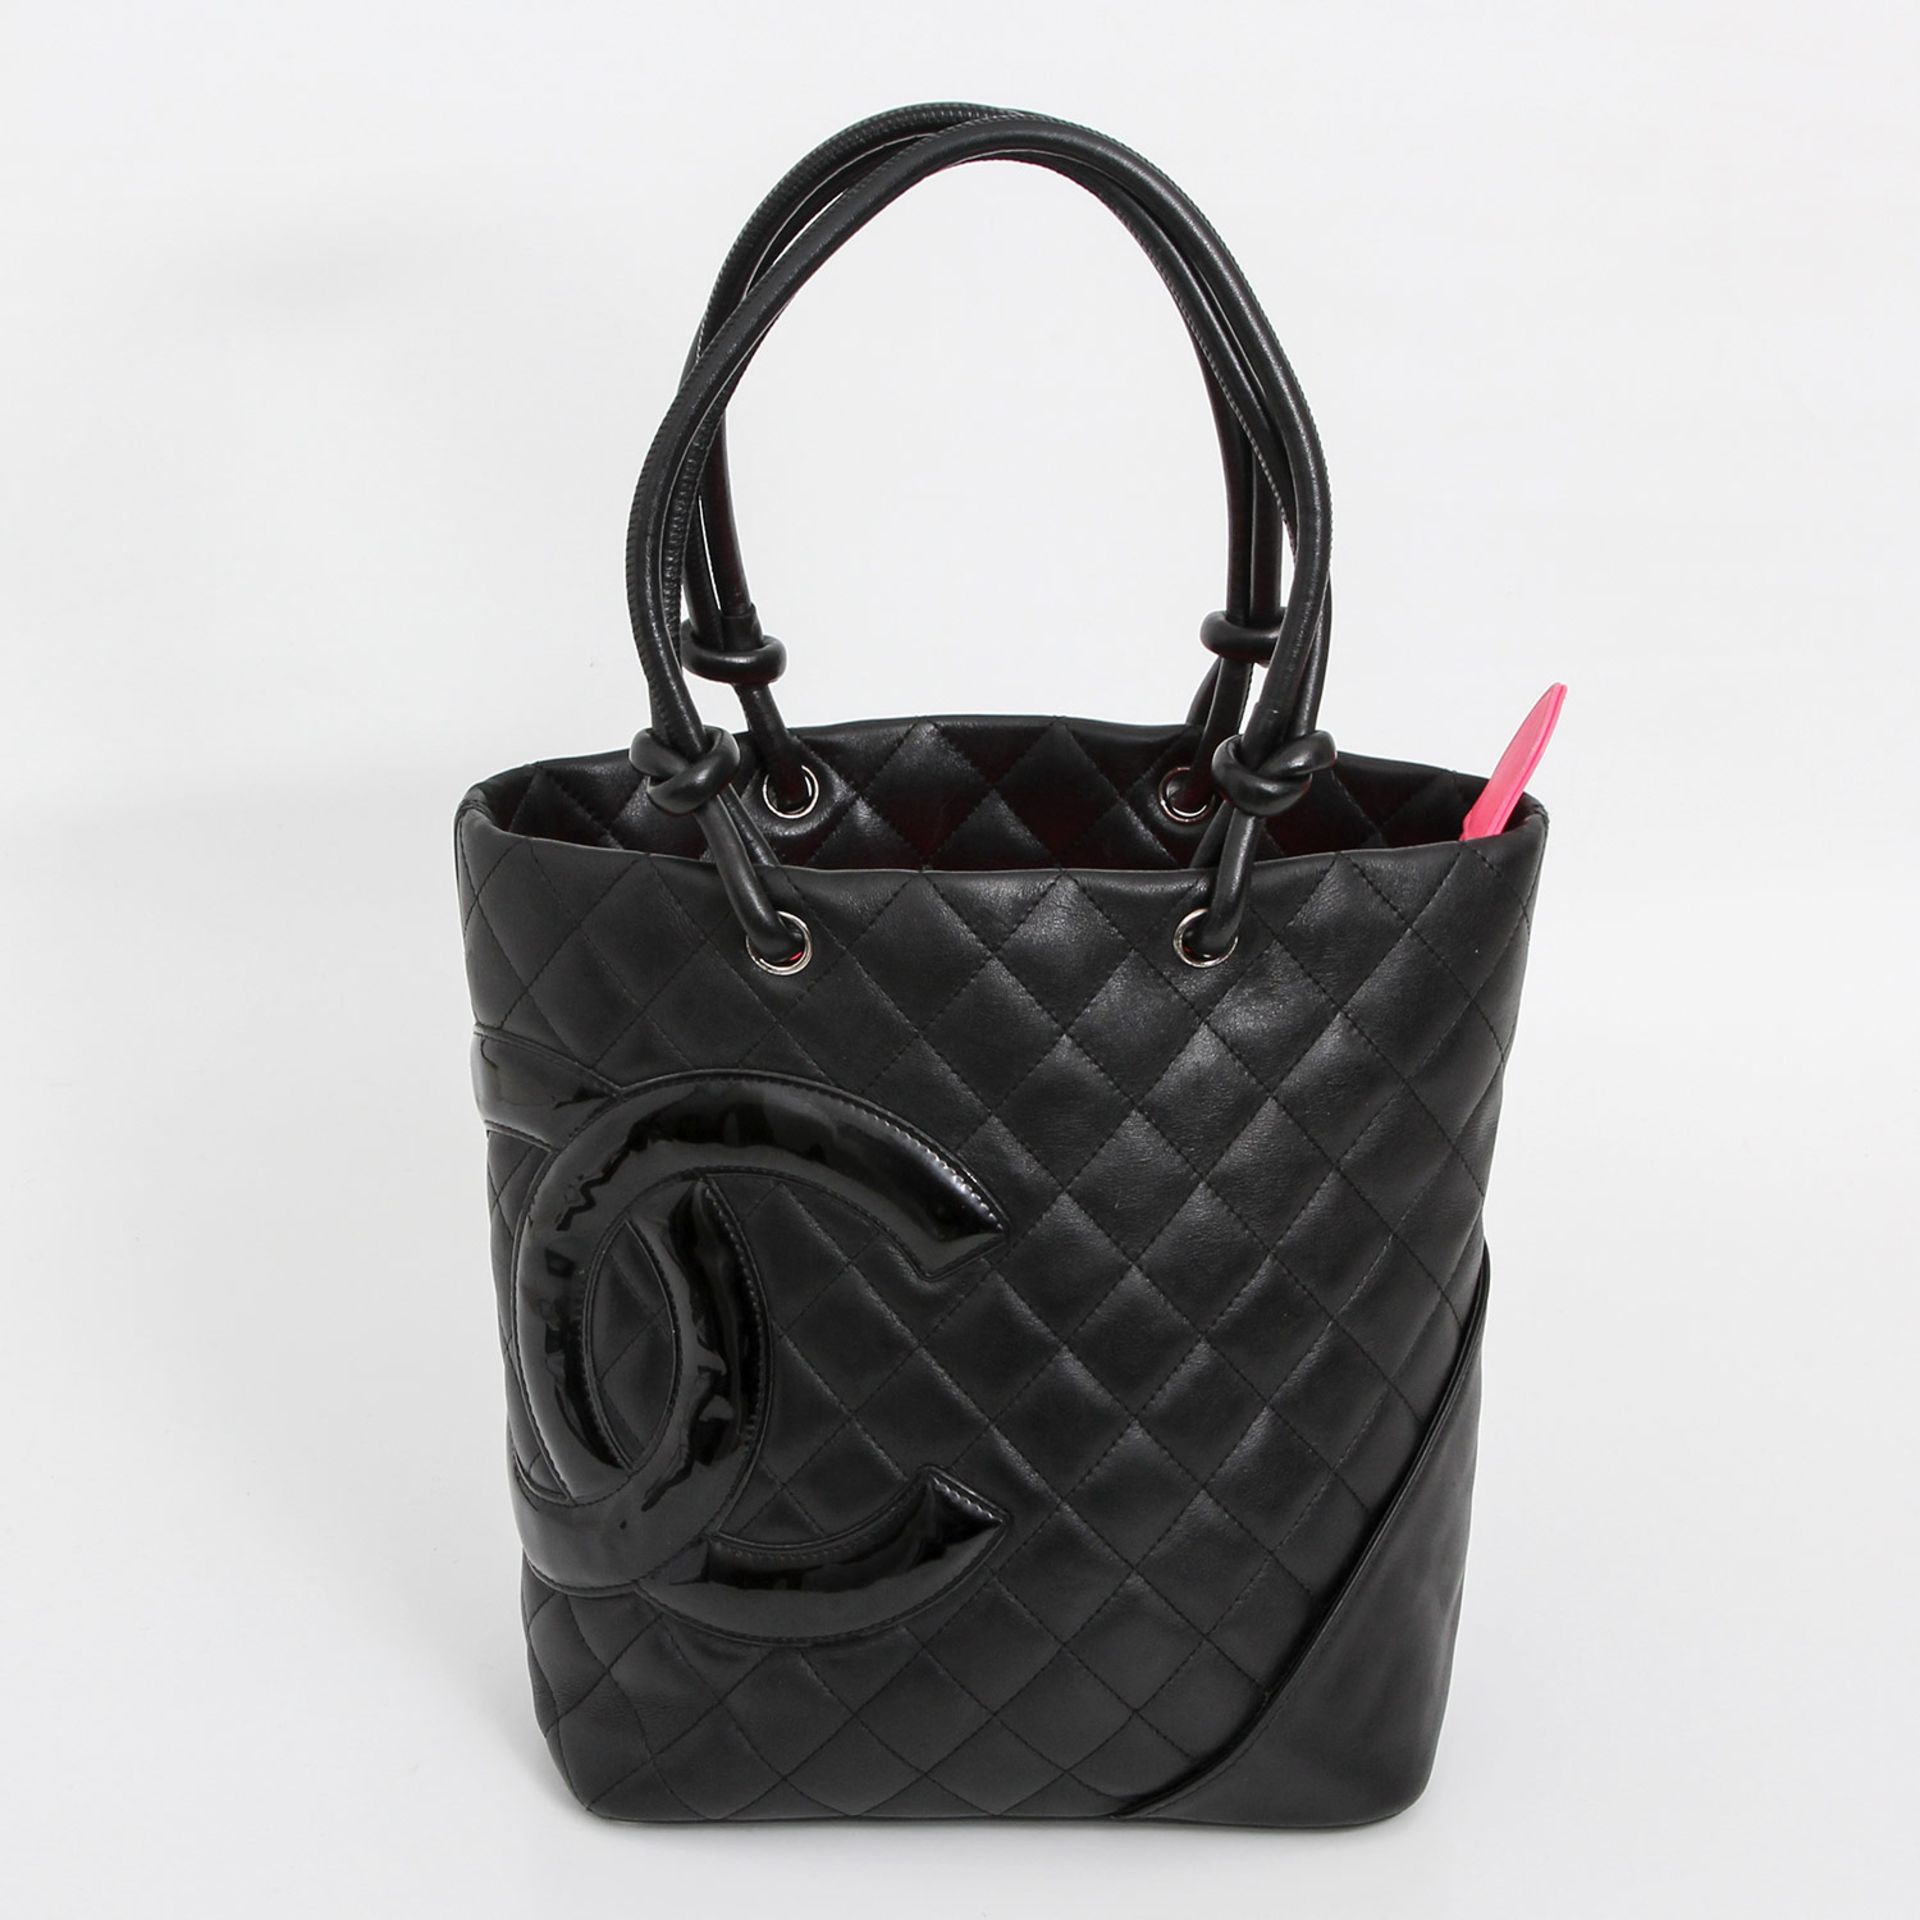 CHANEL schicke Handtasche "Cambon", ca. 25x25x11cm; schwarz, weiches Rautensteppleder mit